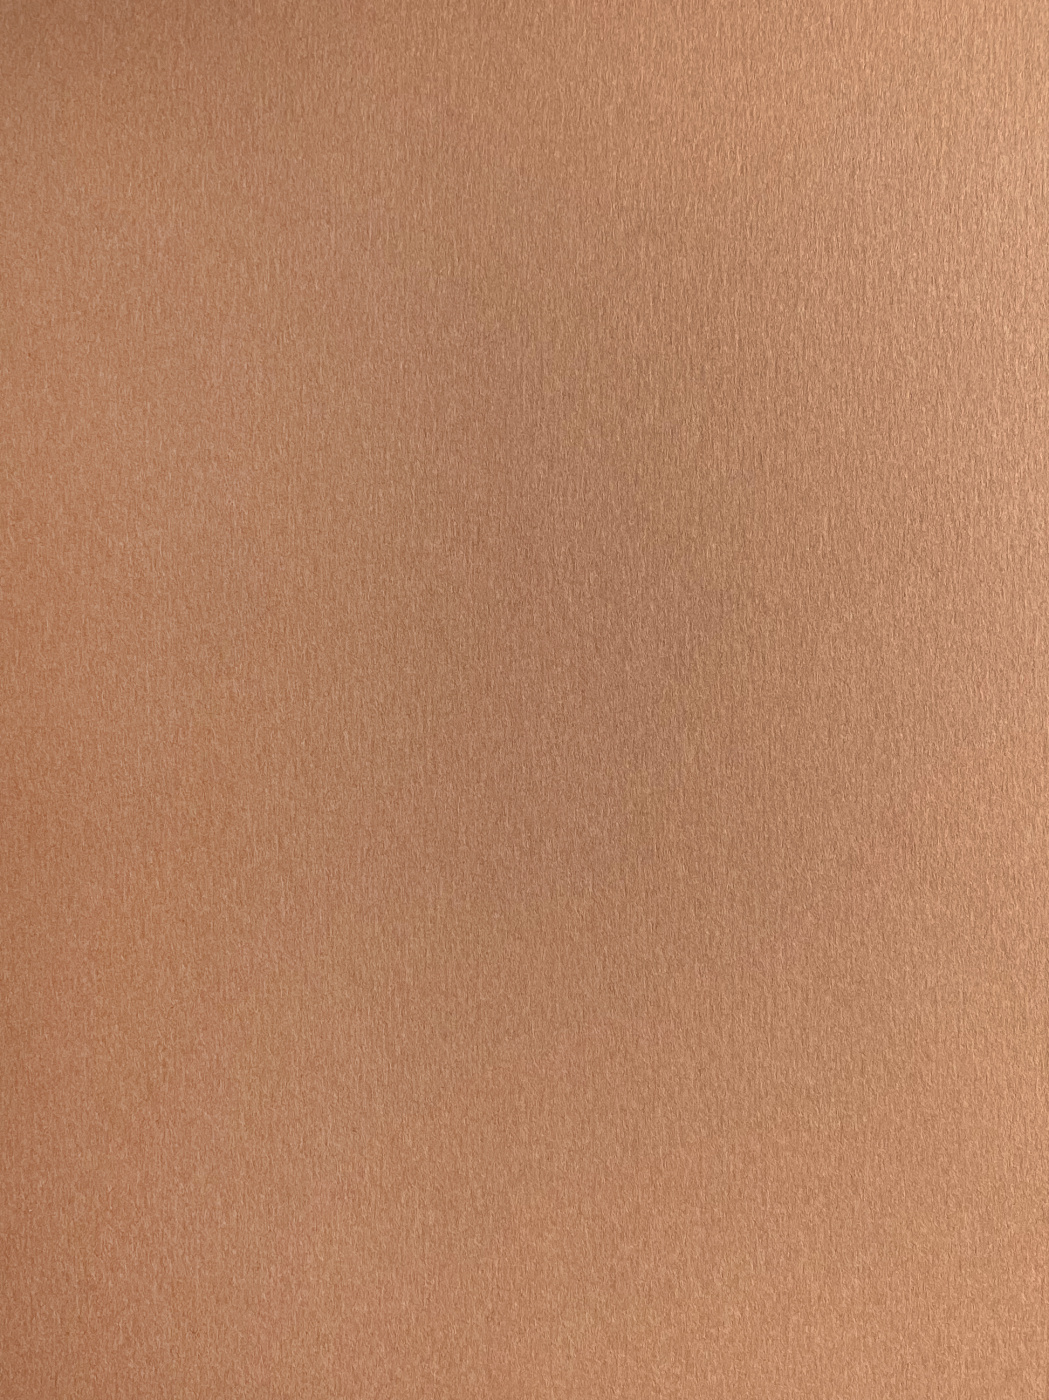 Бумага для пастели Малевичъ GrafArt А3 270 г, коричневая светлая бумага для пастели в папке малевичъ а3 7 л 270 г коричневая светлая